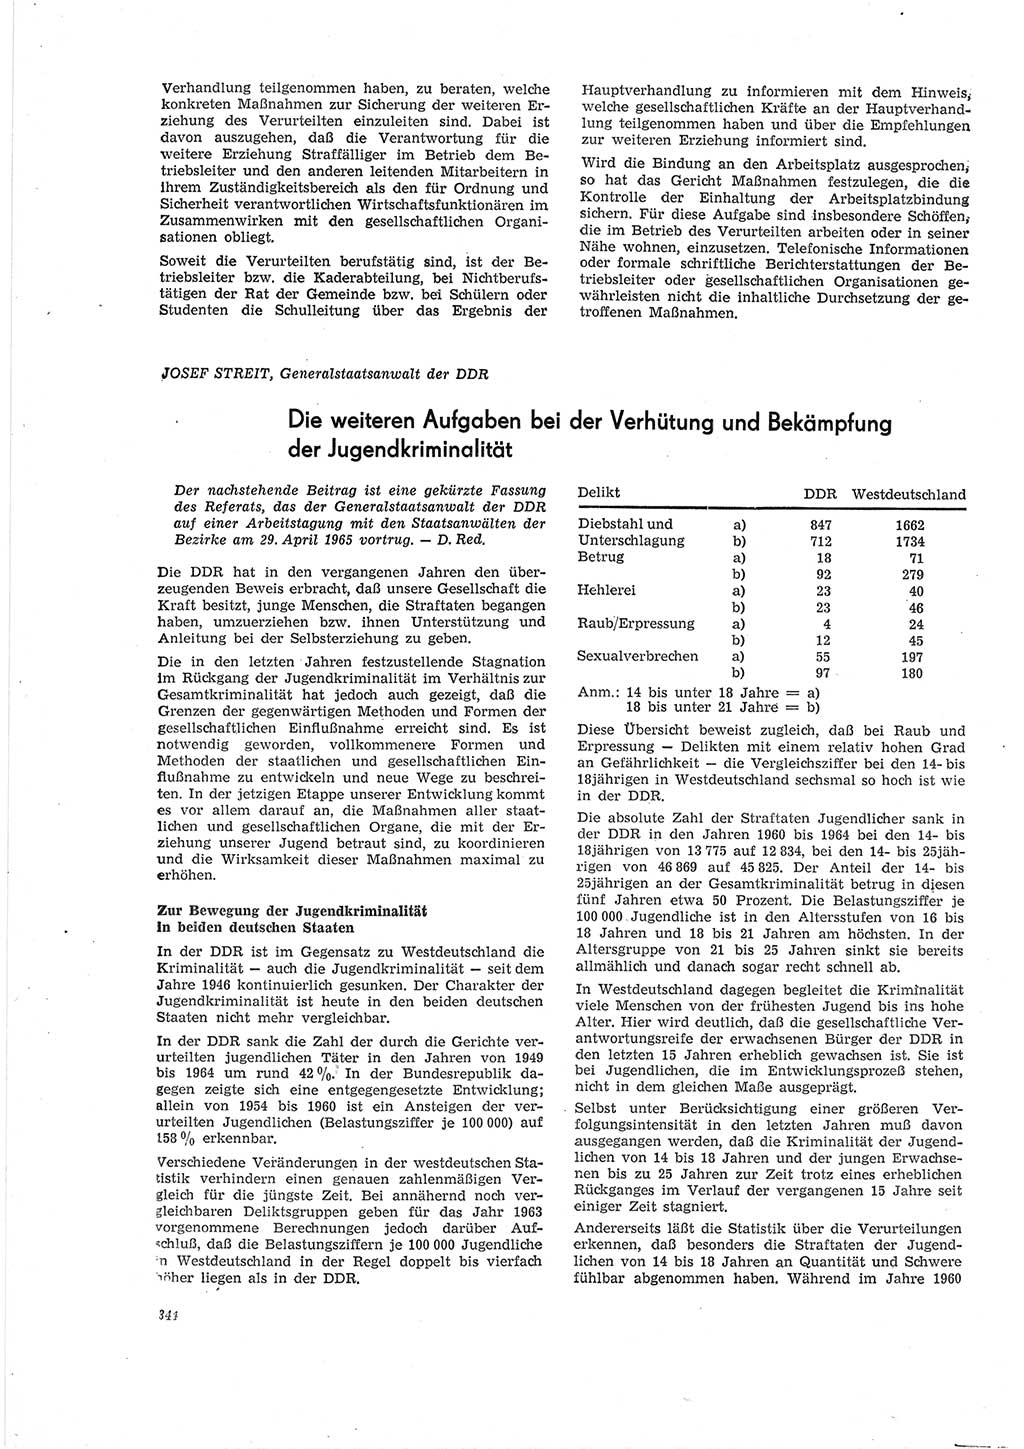 Neue Justiz (NJ), Zeitschrift für Recht und Rechtswissenschaft [Deutsche Demokratische Republik (DDR)], 19. Jahrgang 1965, Seite 344 (NJ DDR 1965, S. 344)